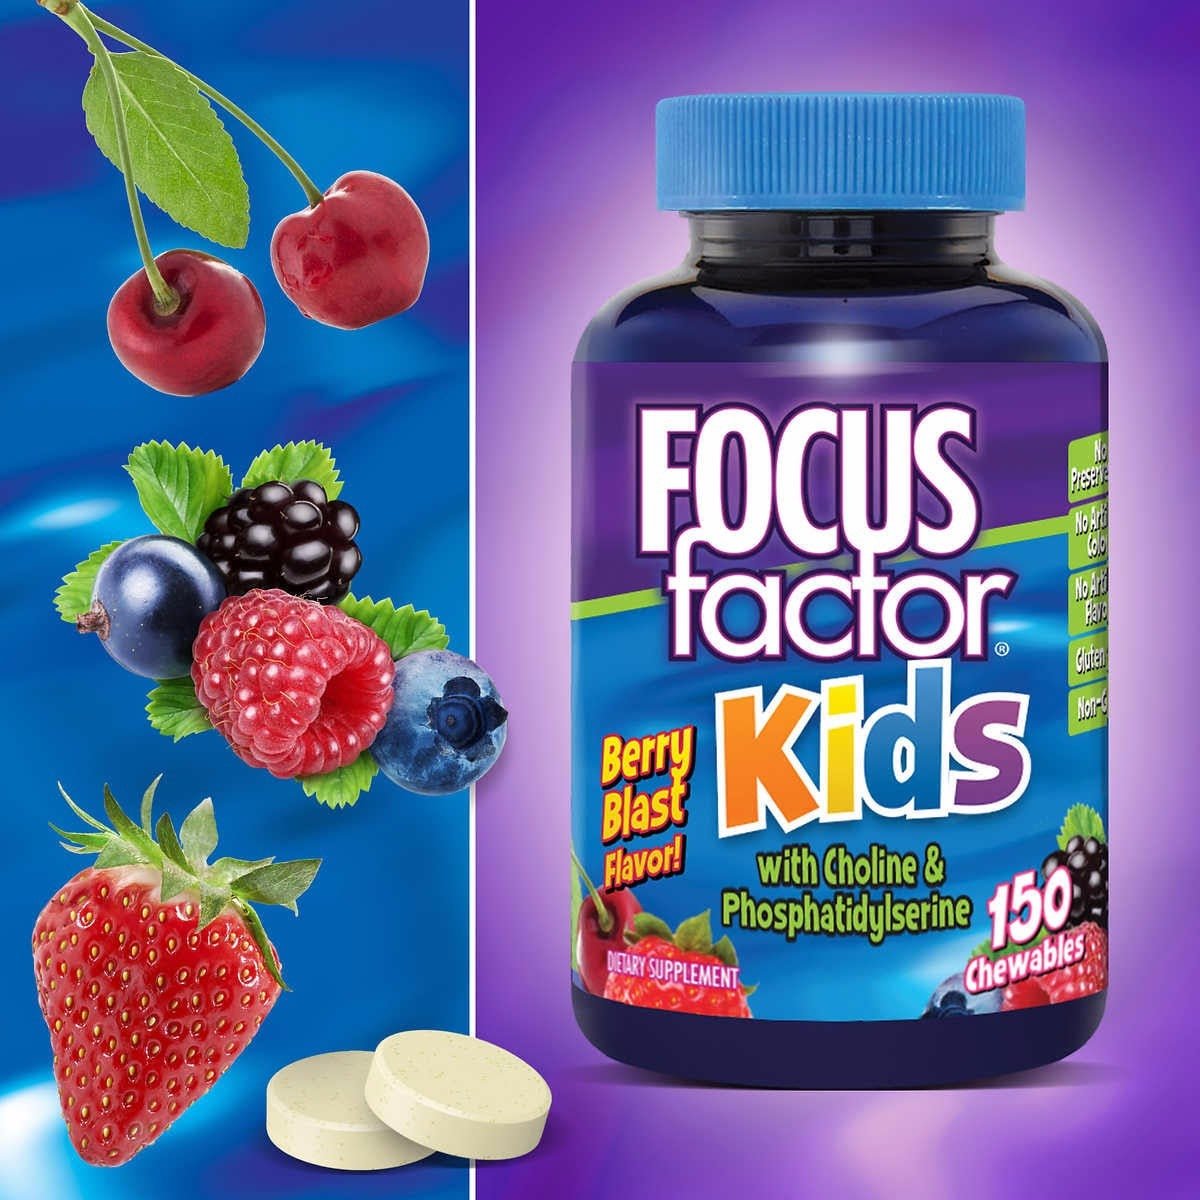 Focus Factor Kids 150 capsulas masticables